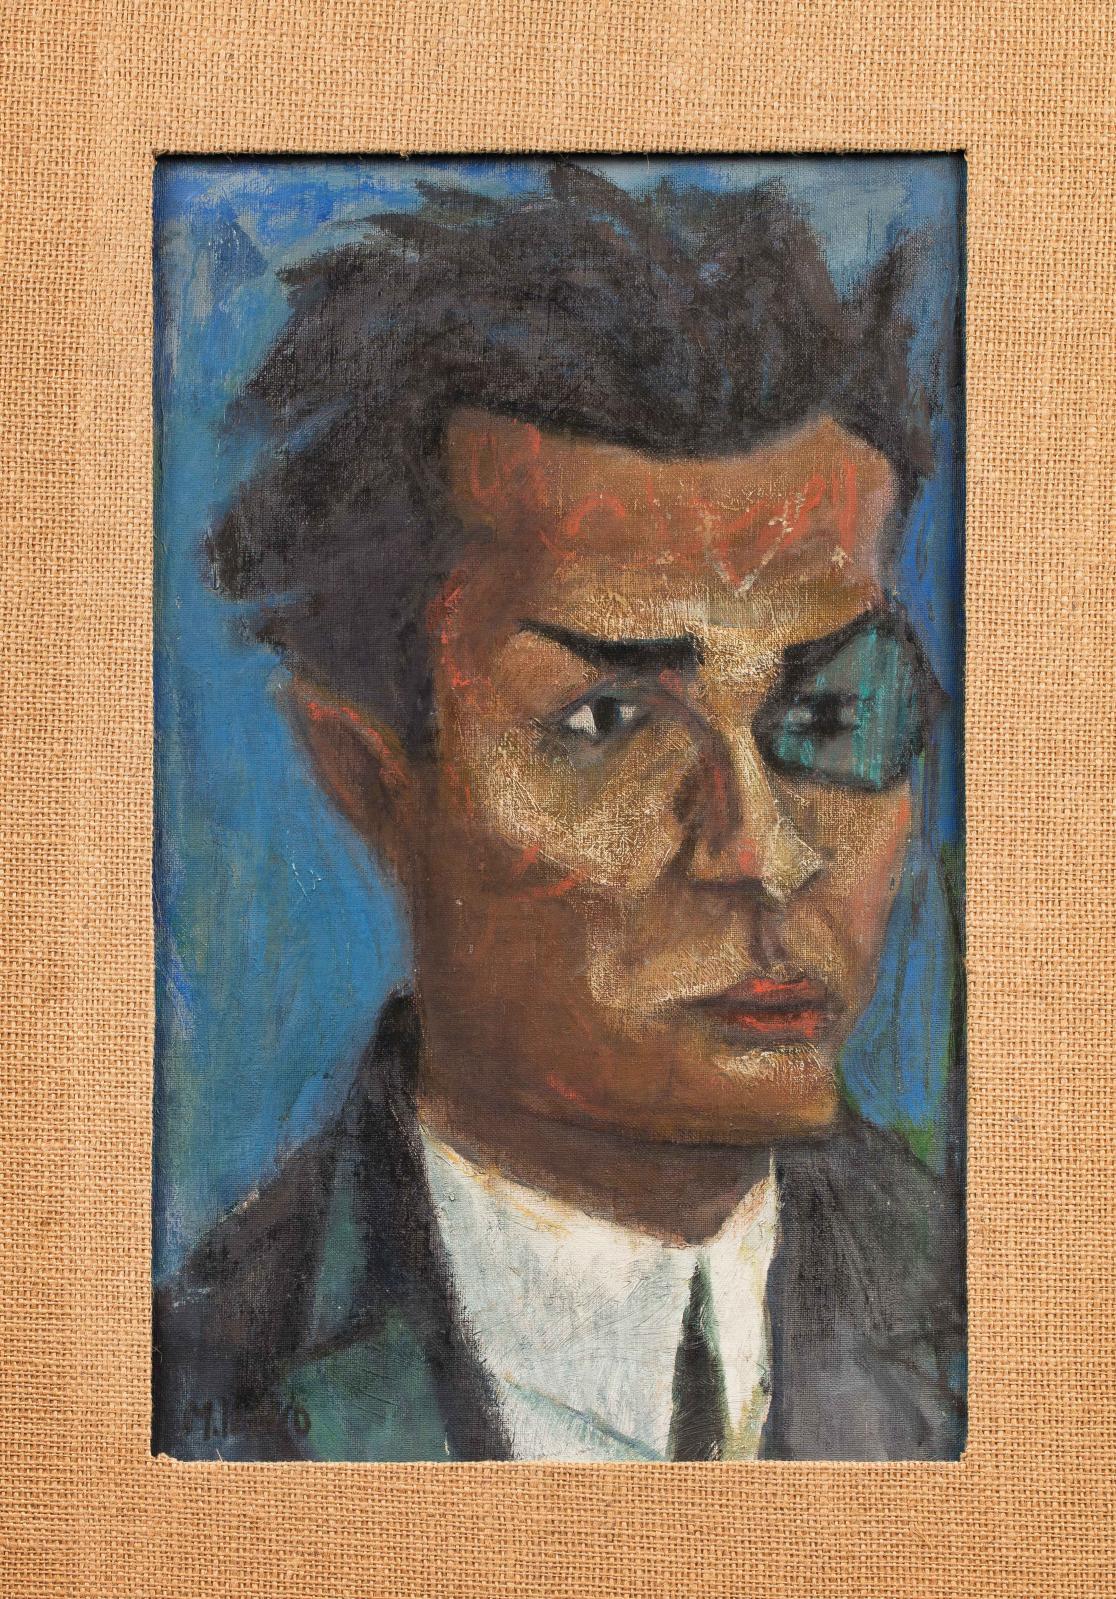 Marcel Janco (1895-1984), Portrait de Tristan Tzara, huile sur carton entoilé, au revers inscription «Marcel Janco TRISTAN TZARA Zurich 1915-16», 61,5